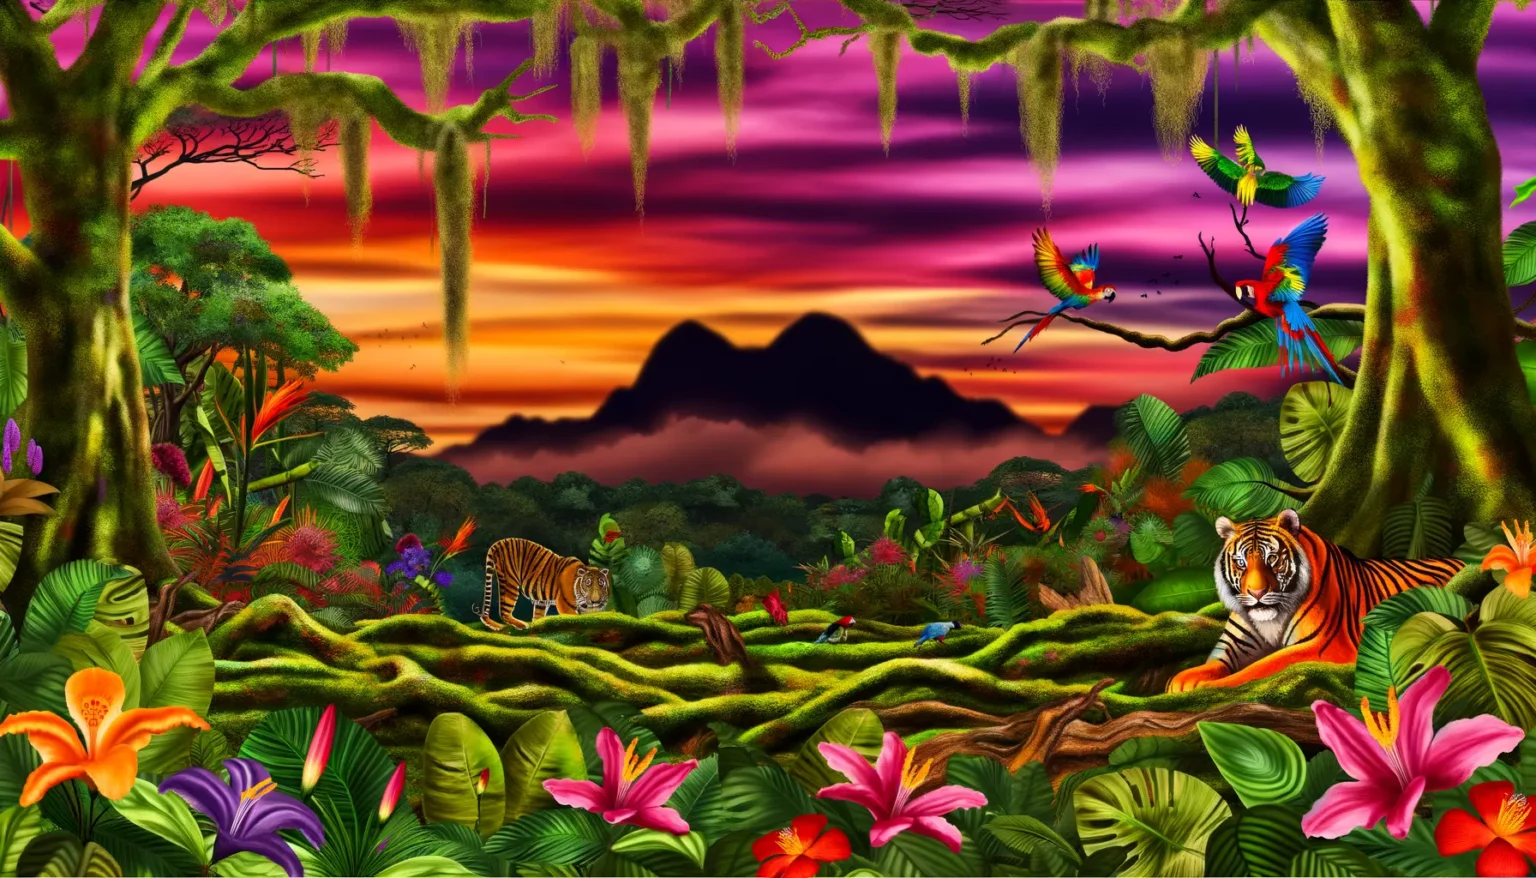 Buntes und detailliertes Bild eines tropischen Regenwaldes bei Sonnenuntergang mit lebhaften Farben im Himmel, reichhaltiger Vegetation und verschiedenen Tierarten. Zwei Tiger ruhen sich im Vordergrund aus, umgeben von farbenfrohen Blumen. Papageien fliegen und sitzen auf den Ästen der Bäume, und im Hintergrund zeichnet sich die Silhouette eines Berges gegen den dramatisch gefärbten Himmel ab.